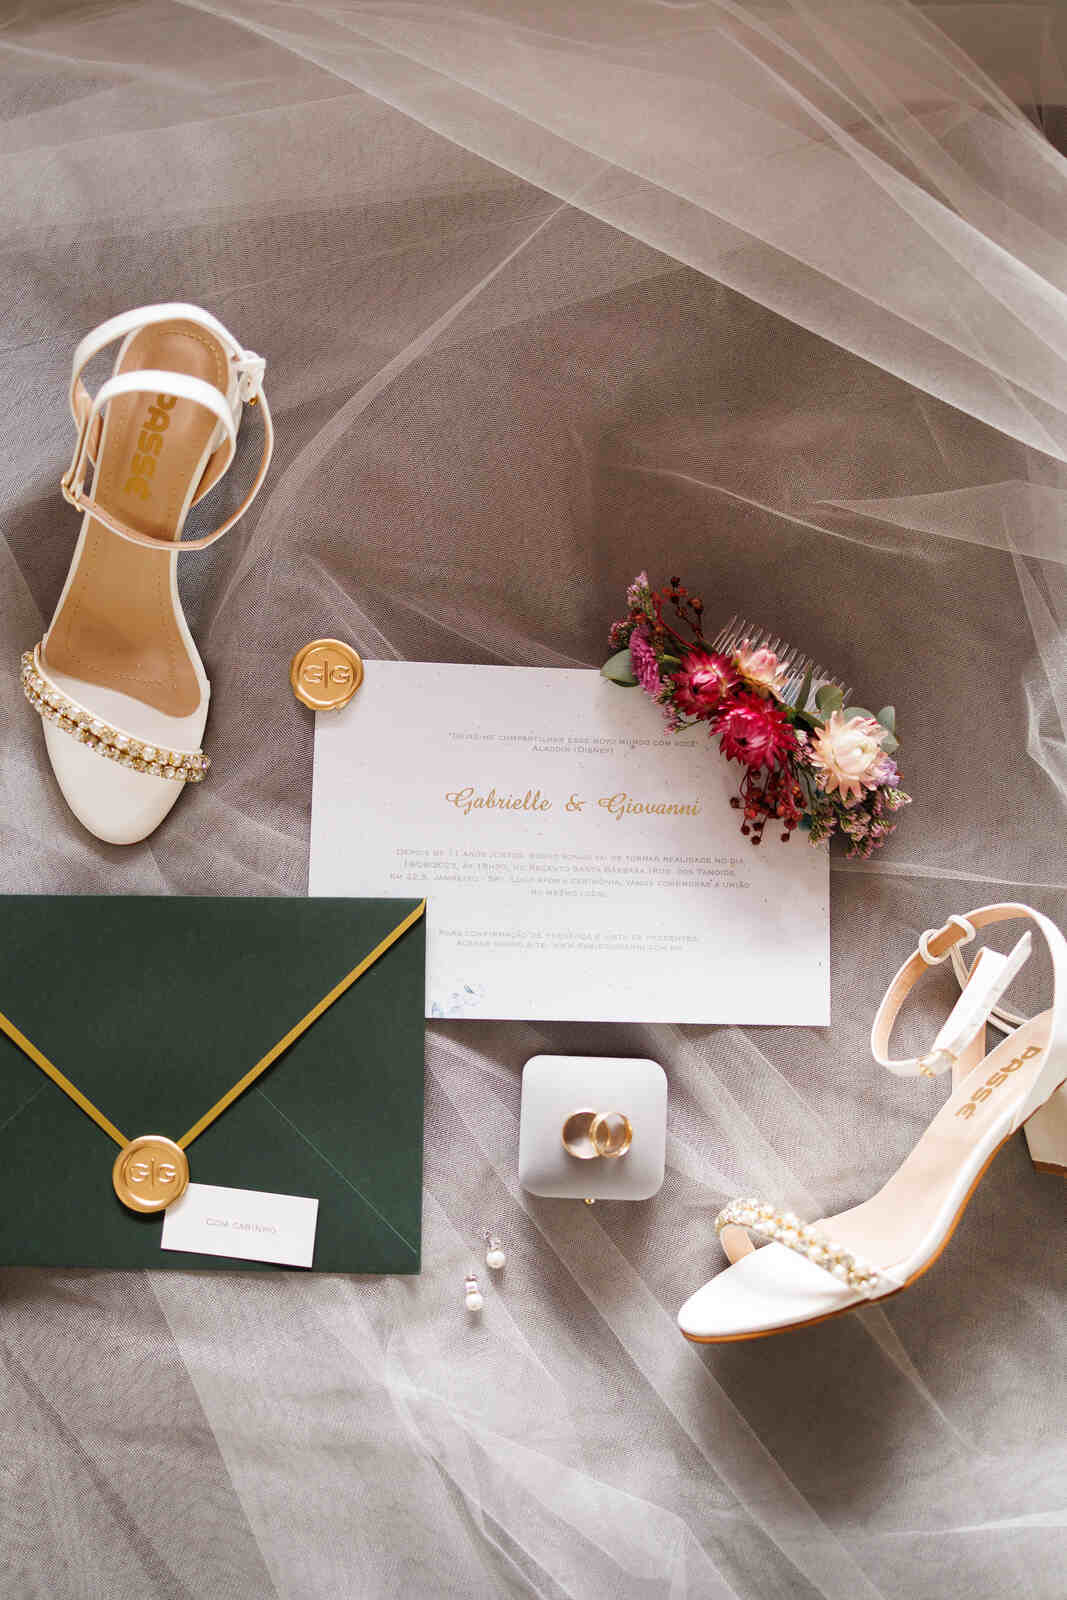 convite de casamento com envelope verde com lacre de cera dourada ao lado de sapato branco sob véu